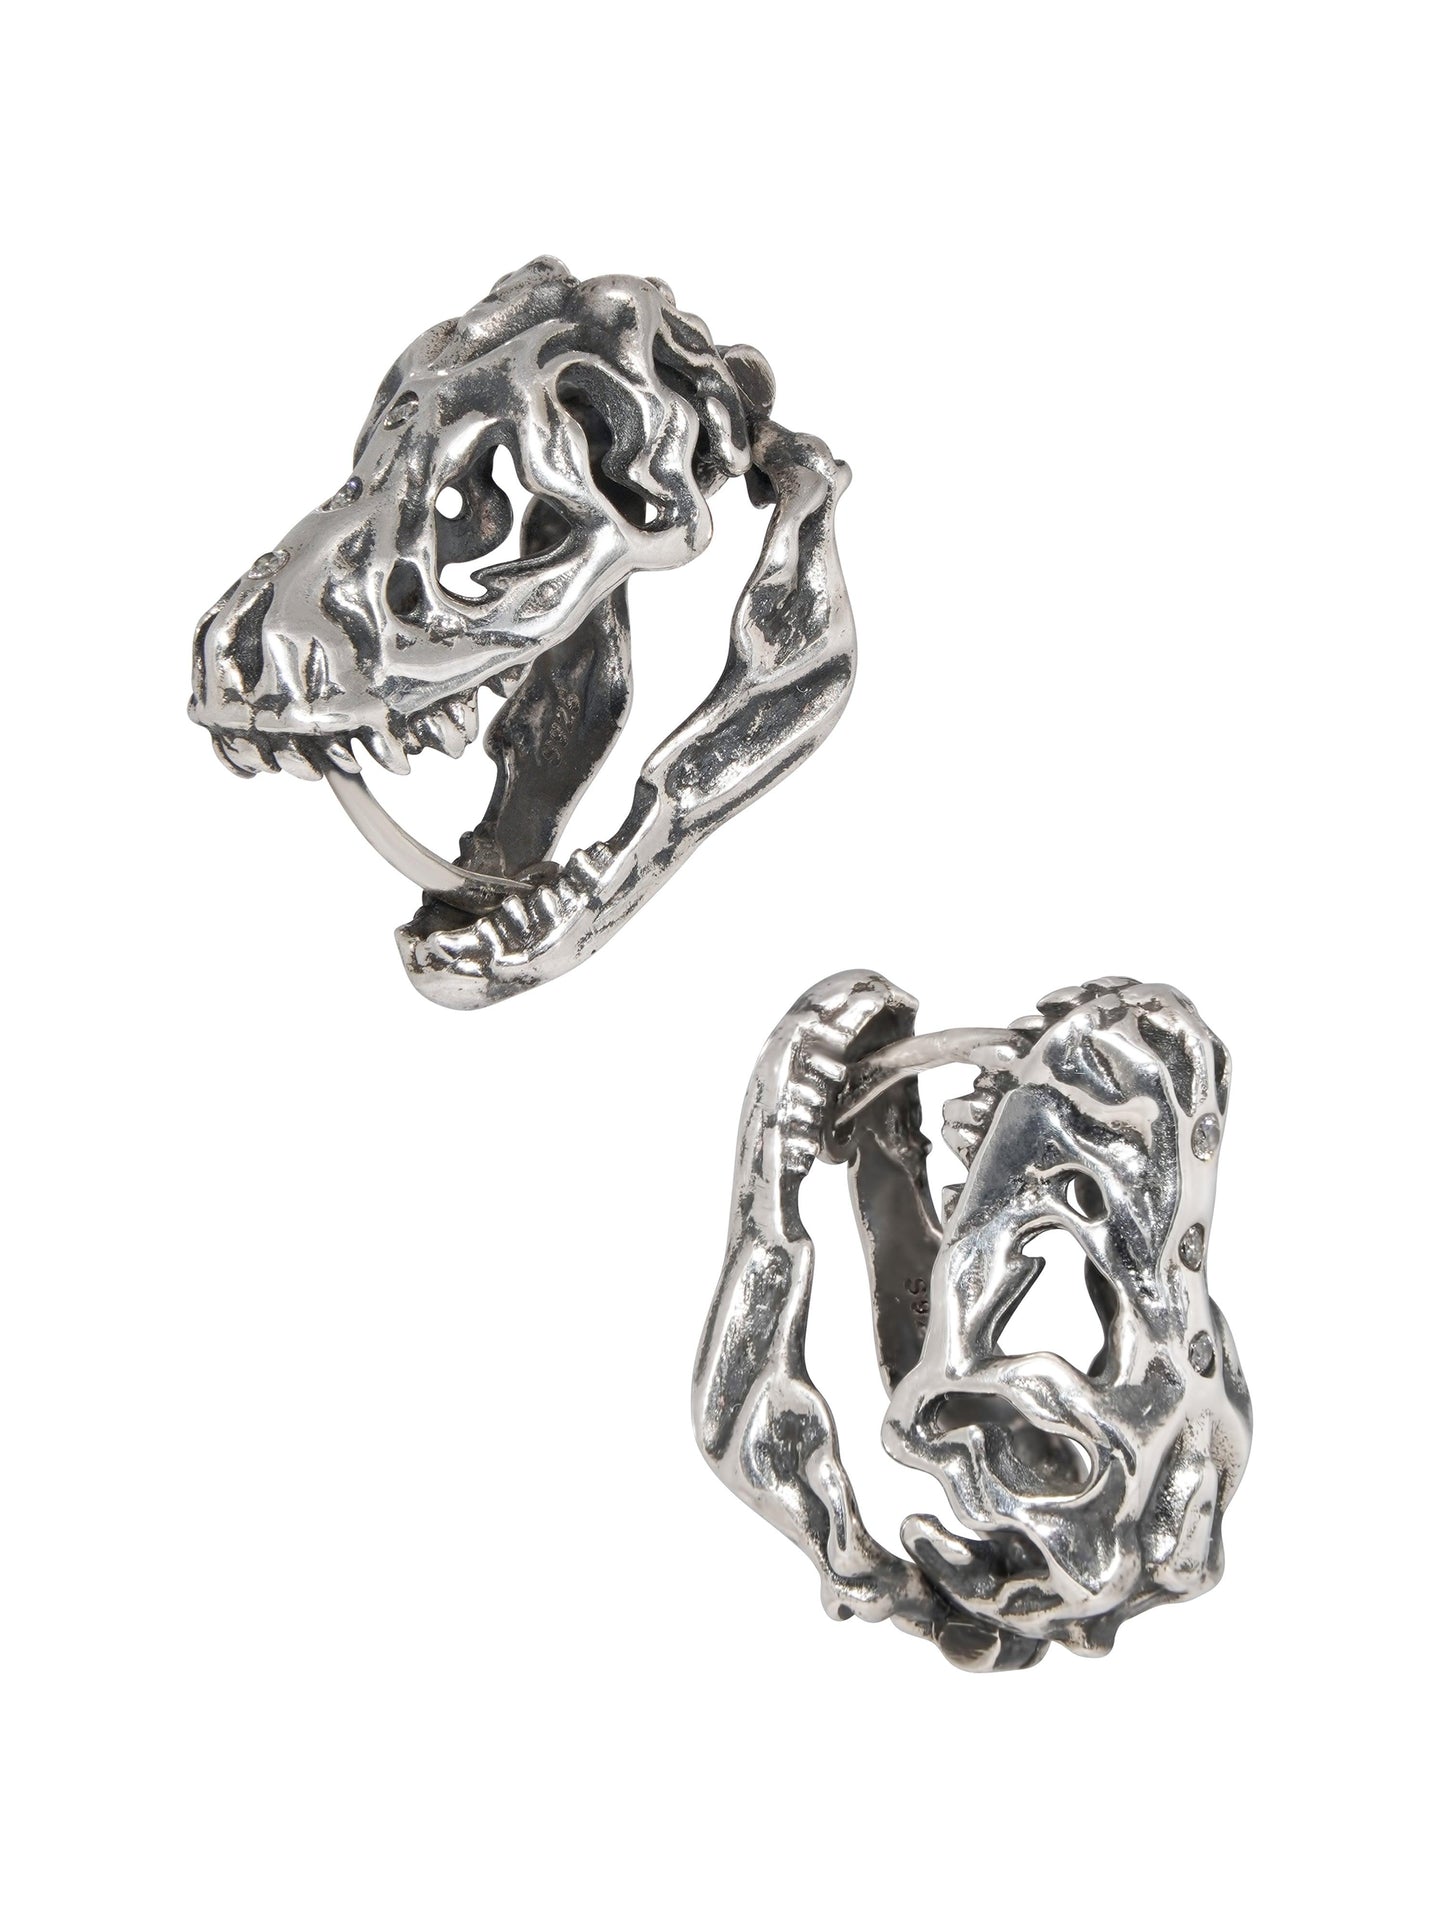 T. rex Skull Earrings - Work Piece